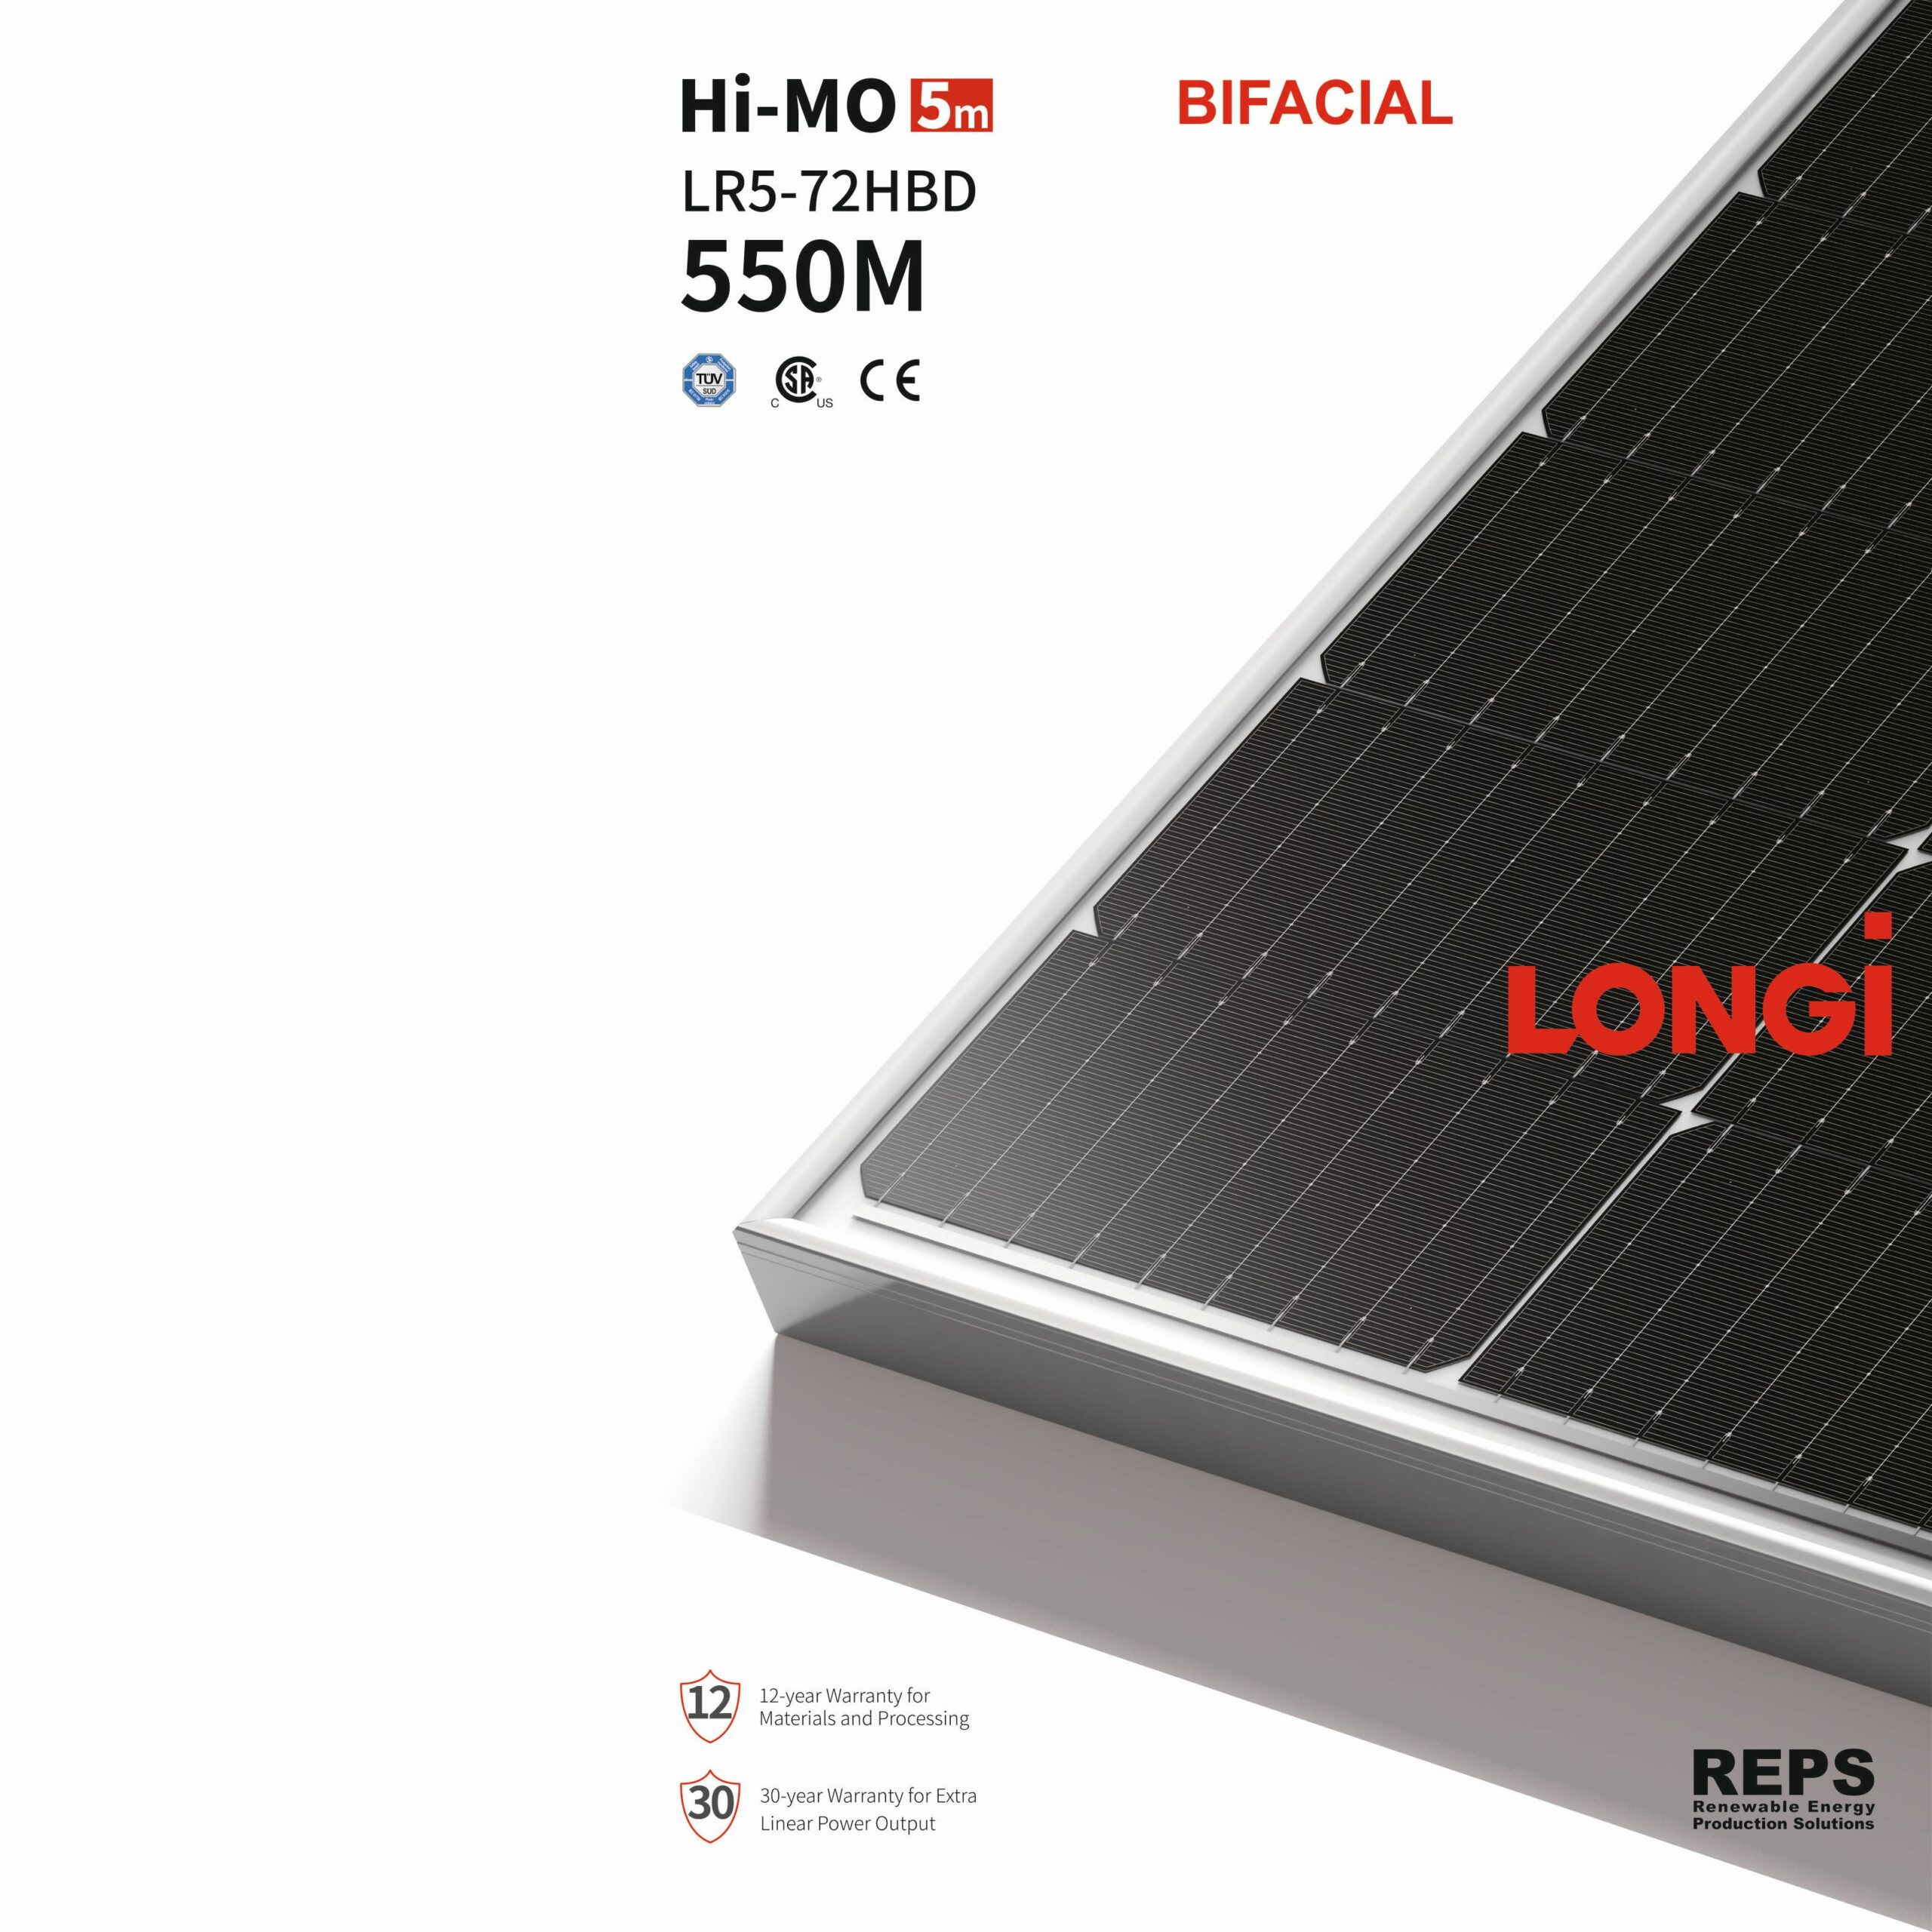 LONGi 550 Wp Bifacial LR5-72HBD